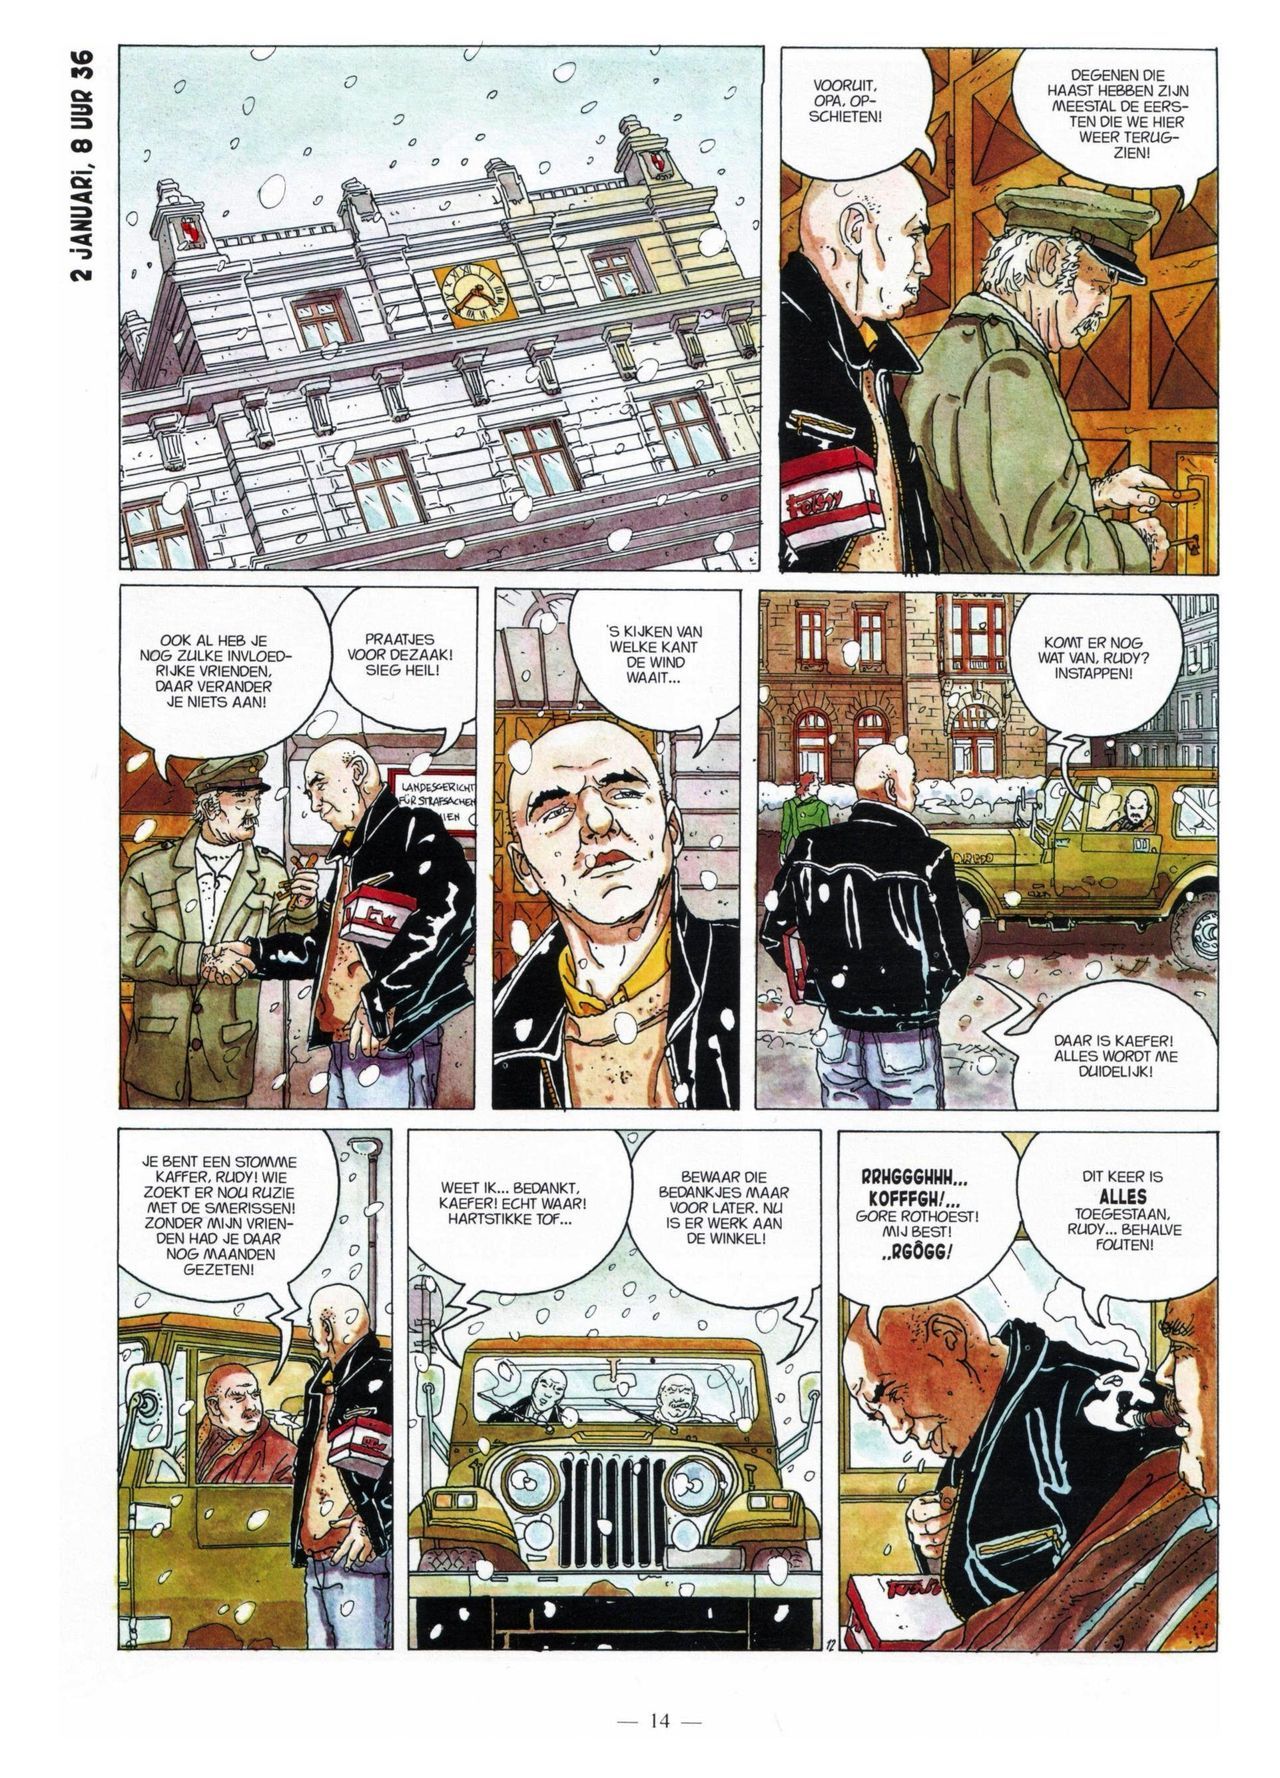 Anna Stein - 03 - De Laatste Alpengloed (Dutch) Engelstalige strips die op deze site staan, hier is de Nederlandse uitgave! 14